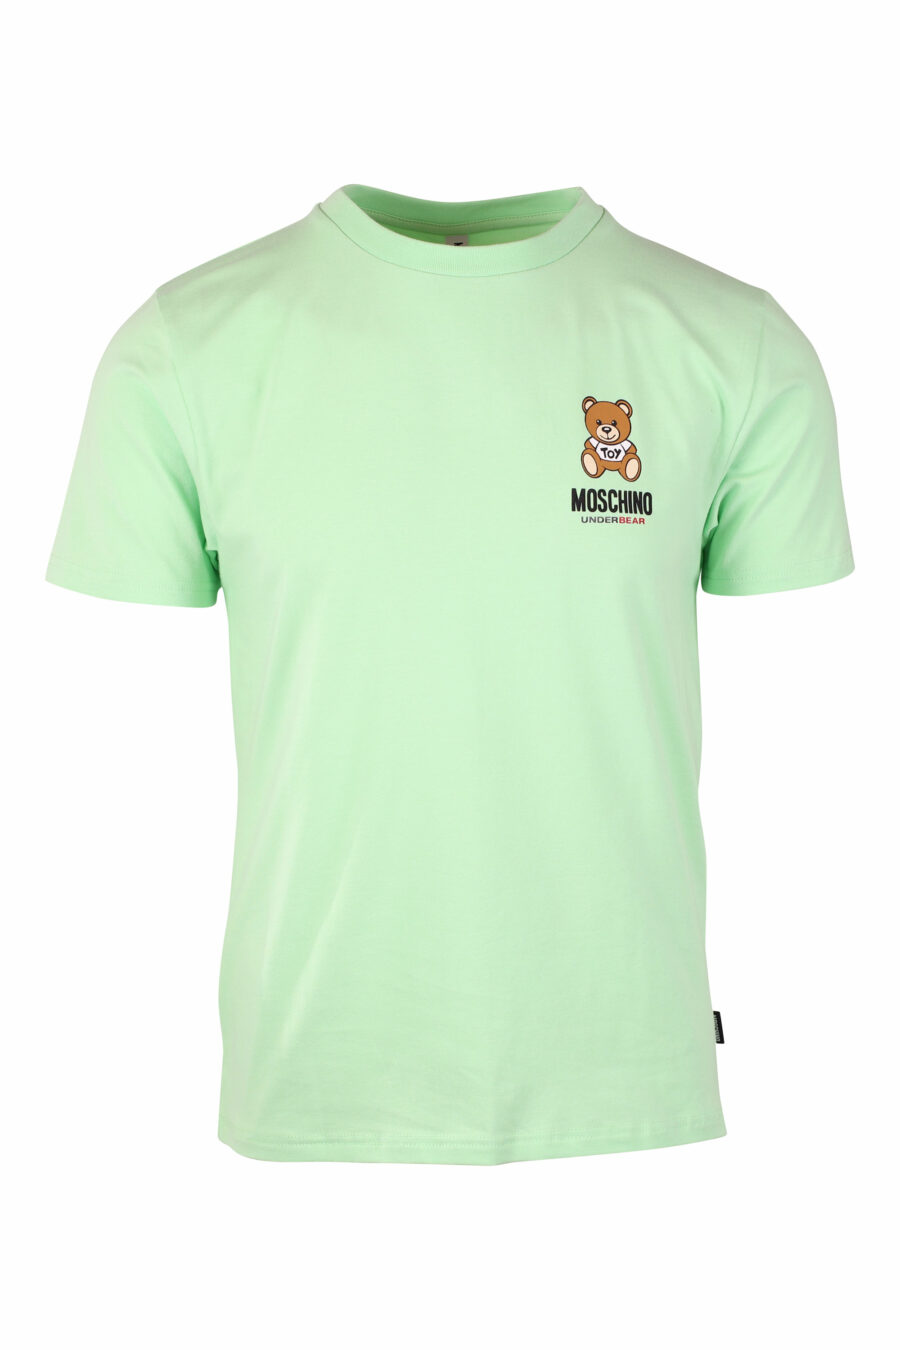 T-shirt slim vert menthe avec logo de l'ours underbear - IMG 1387